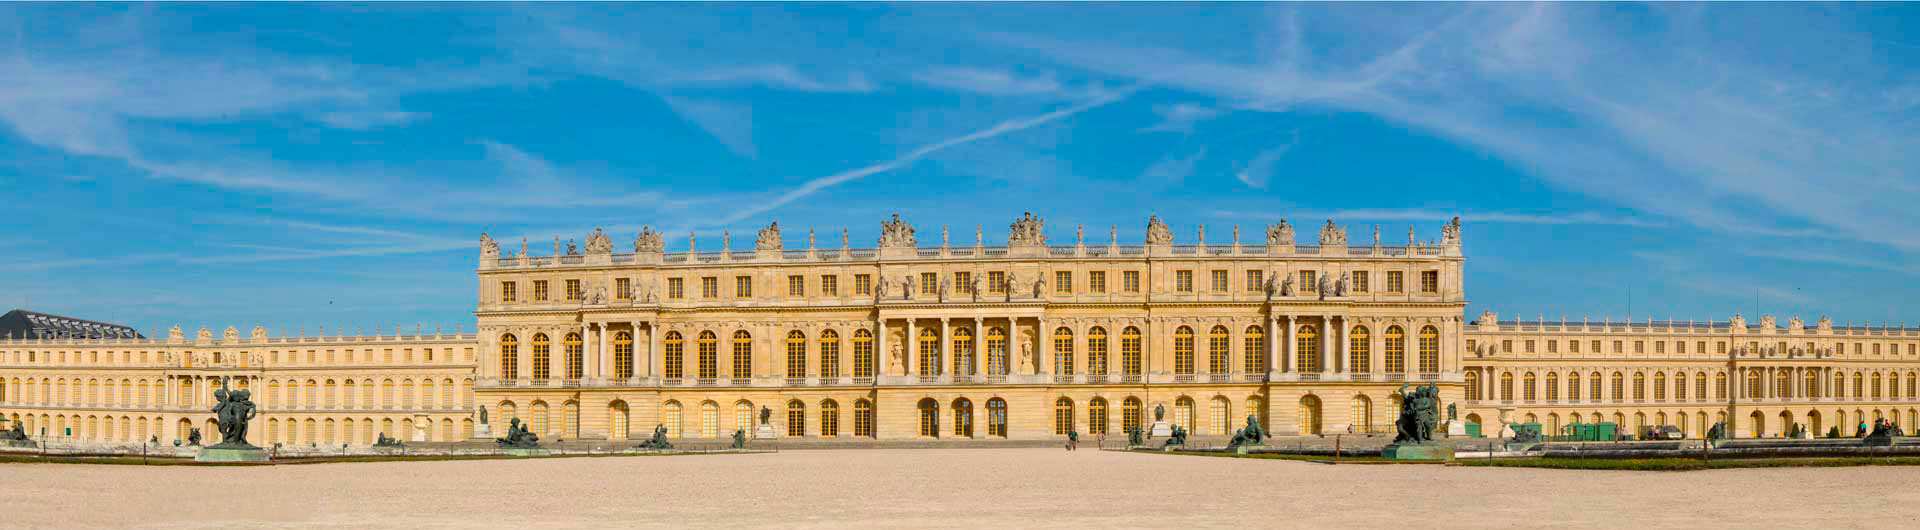 Le palais de Louis XIV